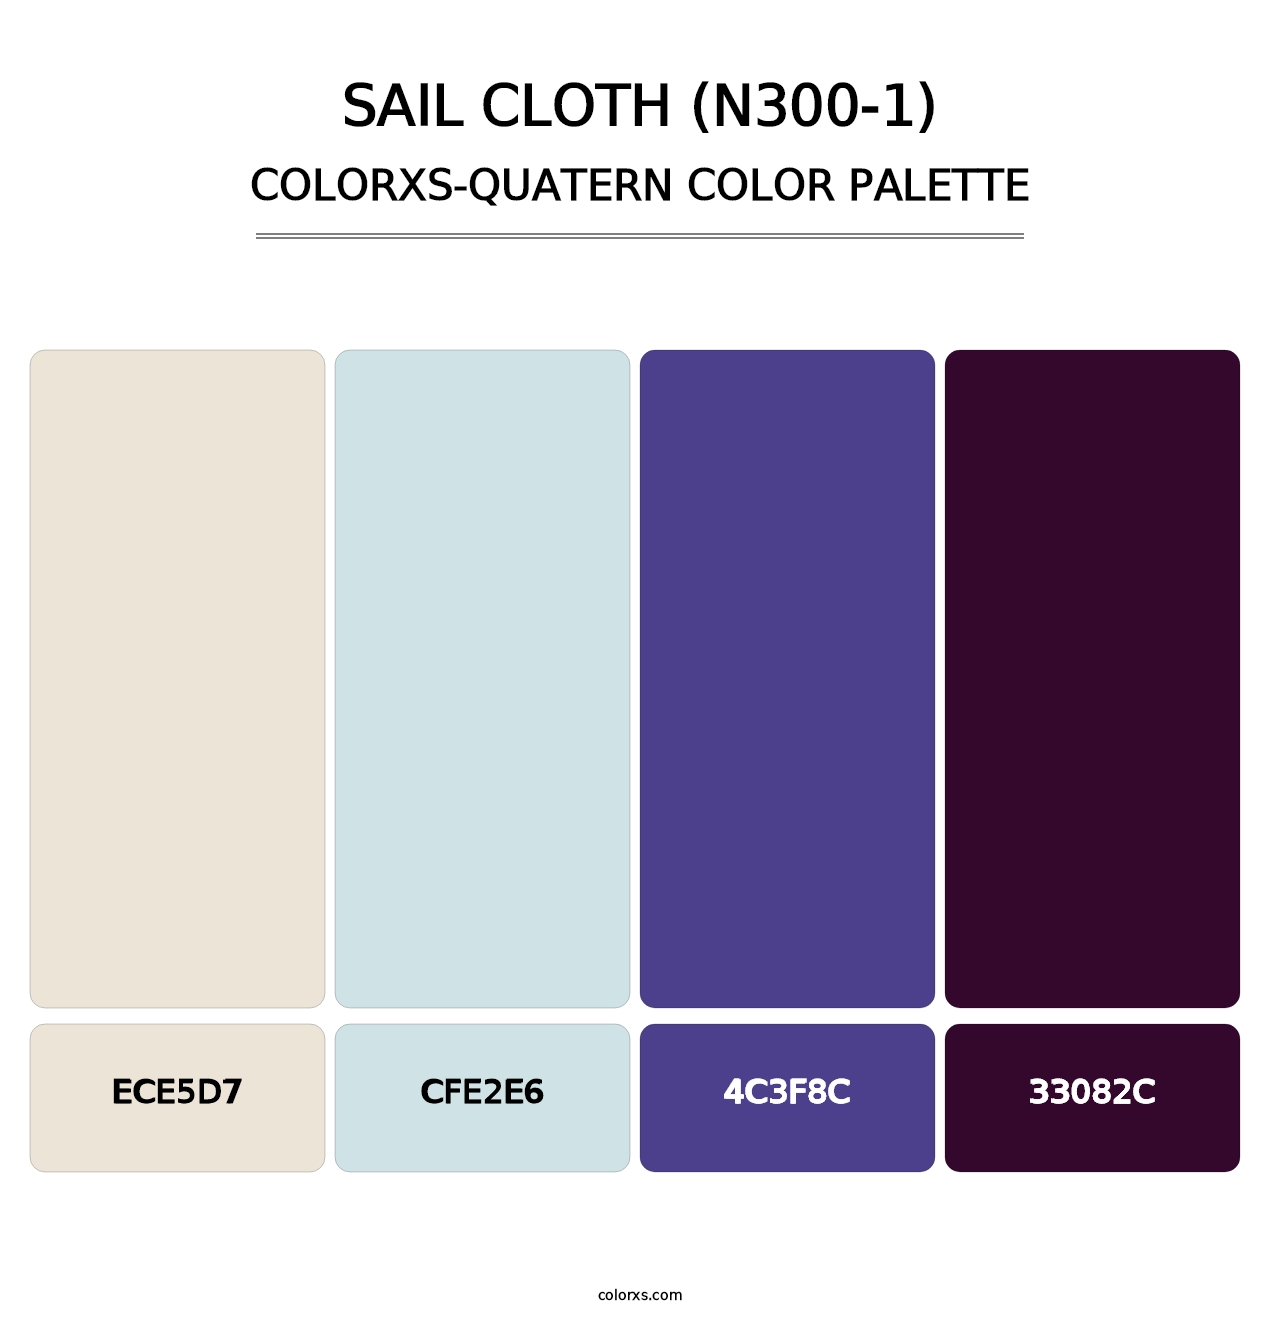 Sail Cloth (N300-1) - Colorxs Quatern Palette